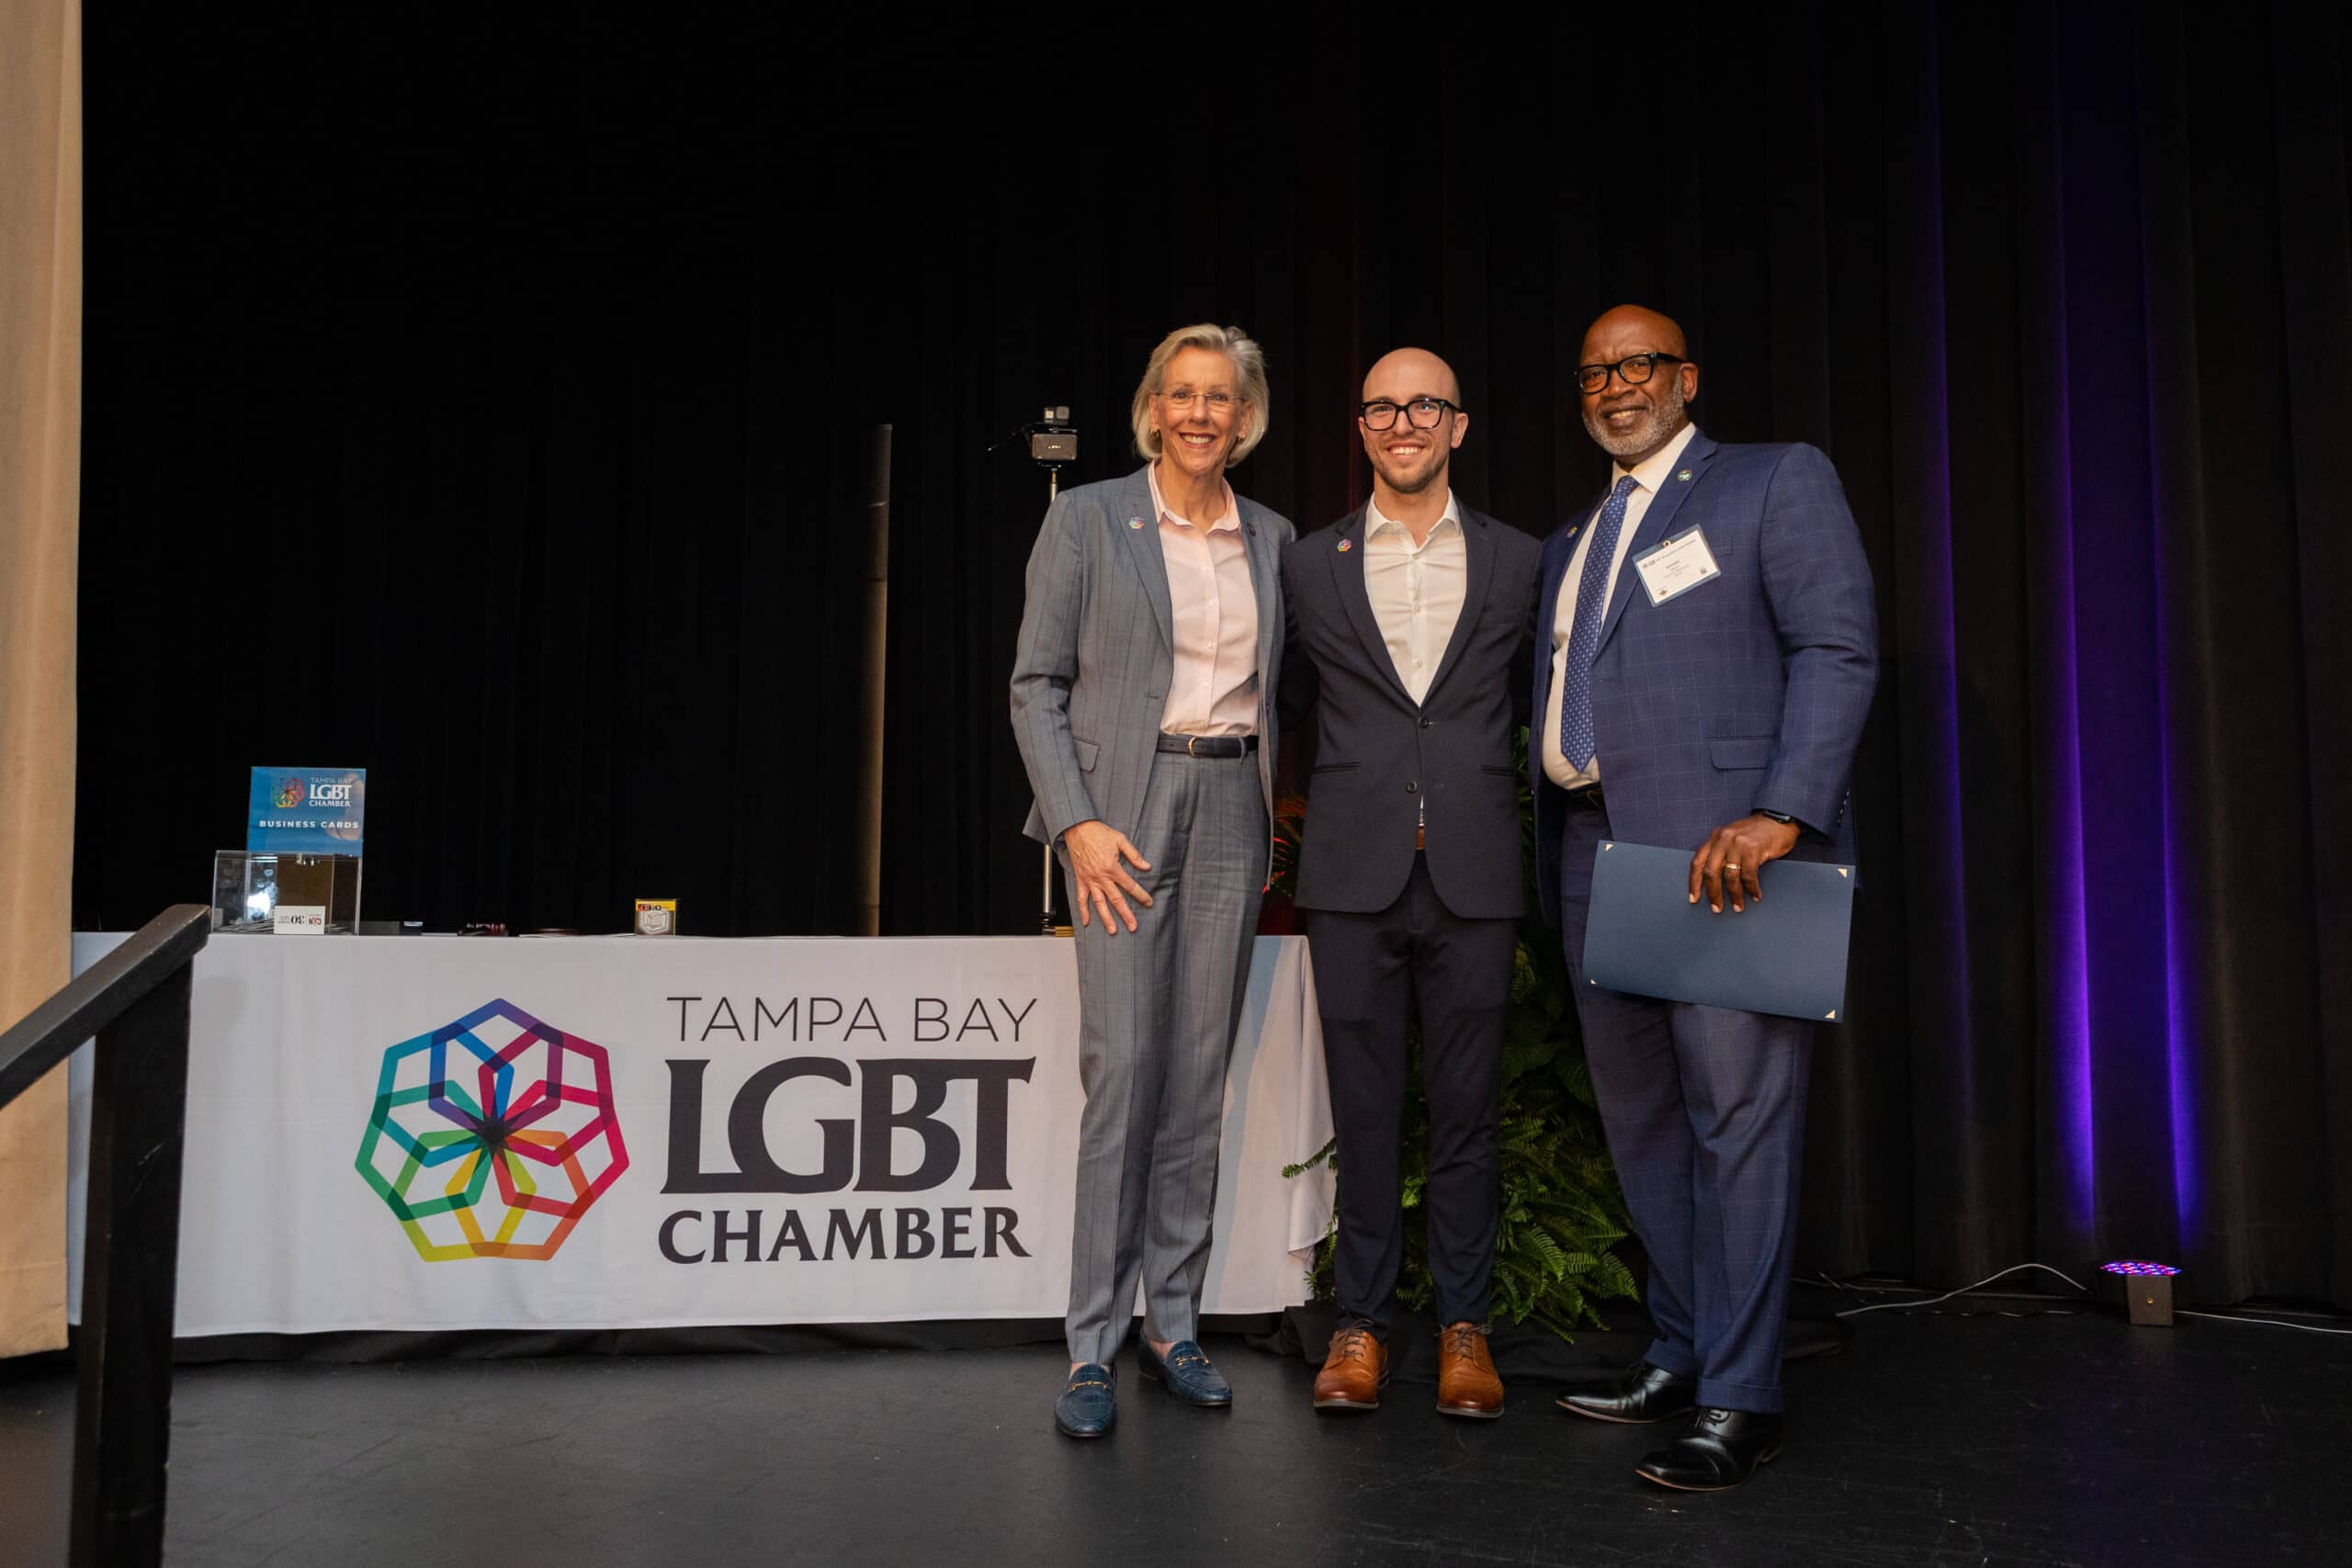 Tampa bay gay and lesbian chamber